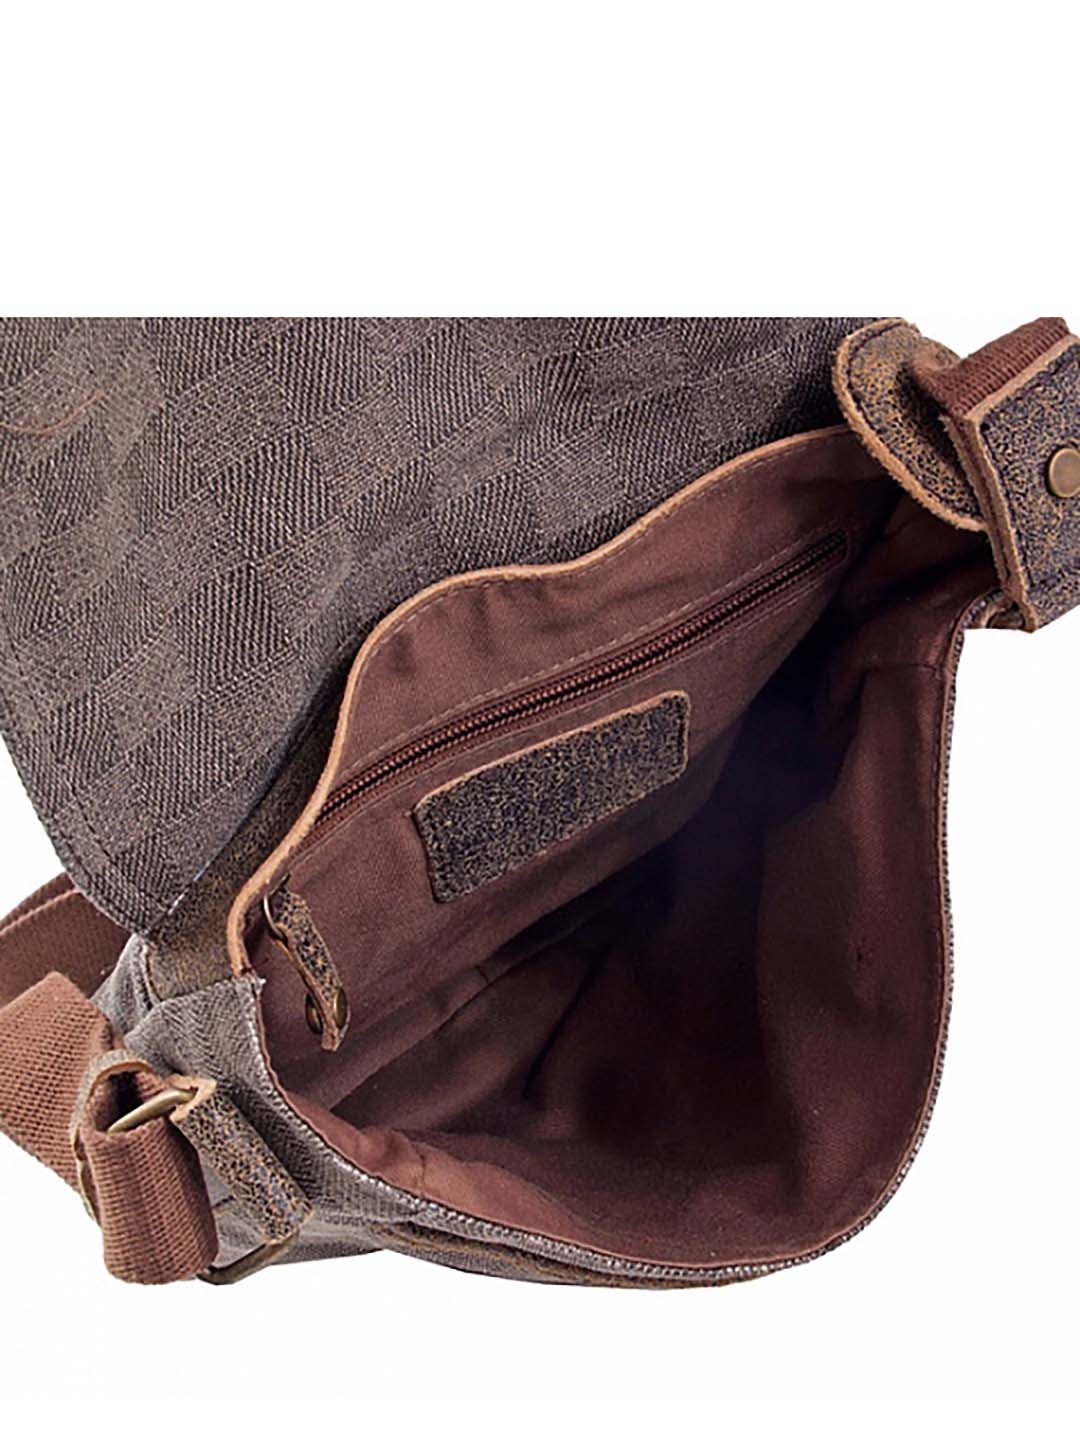 Фото Небольшая мужская сумка коричневого цвета из винтажной кожи Сумки через плечо